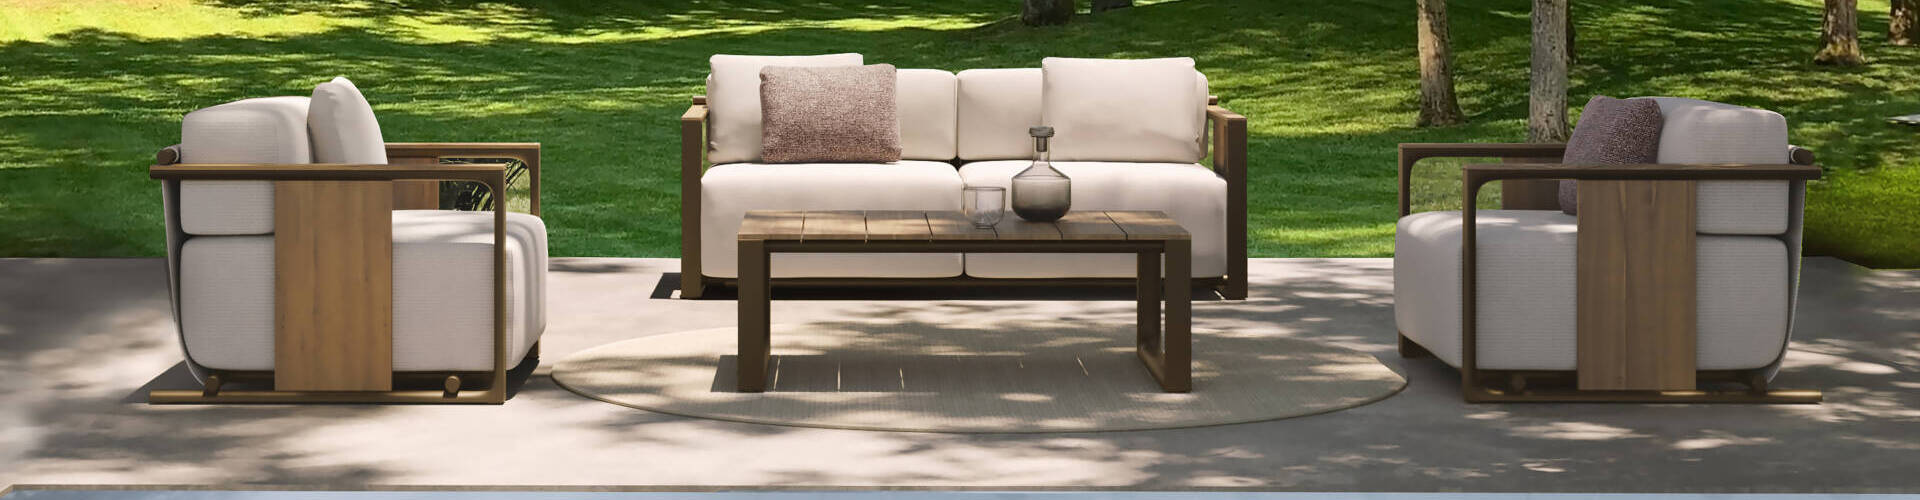 Vondom-Tulum-outdoor-furniture-5b